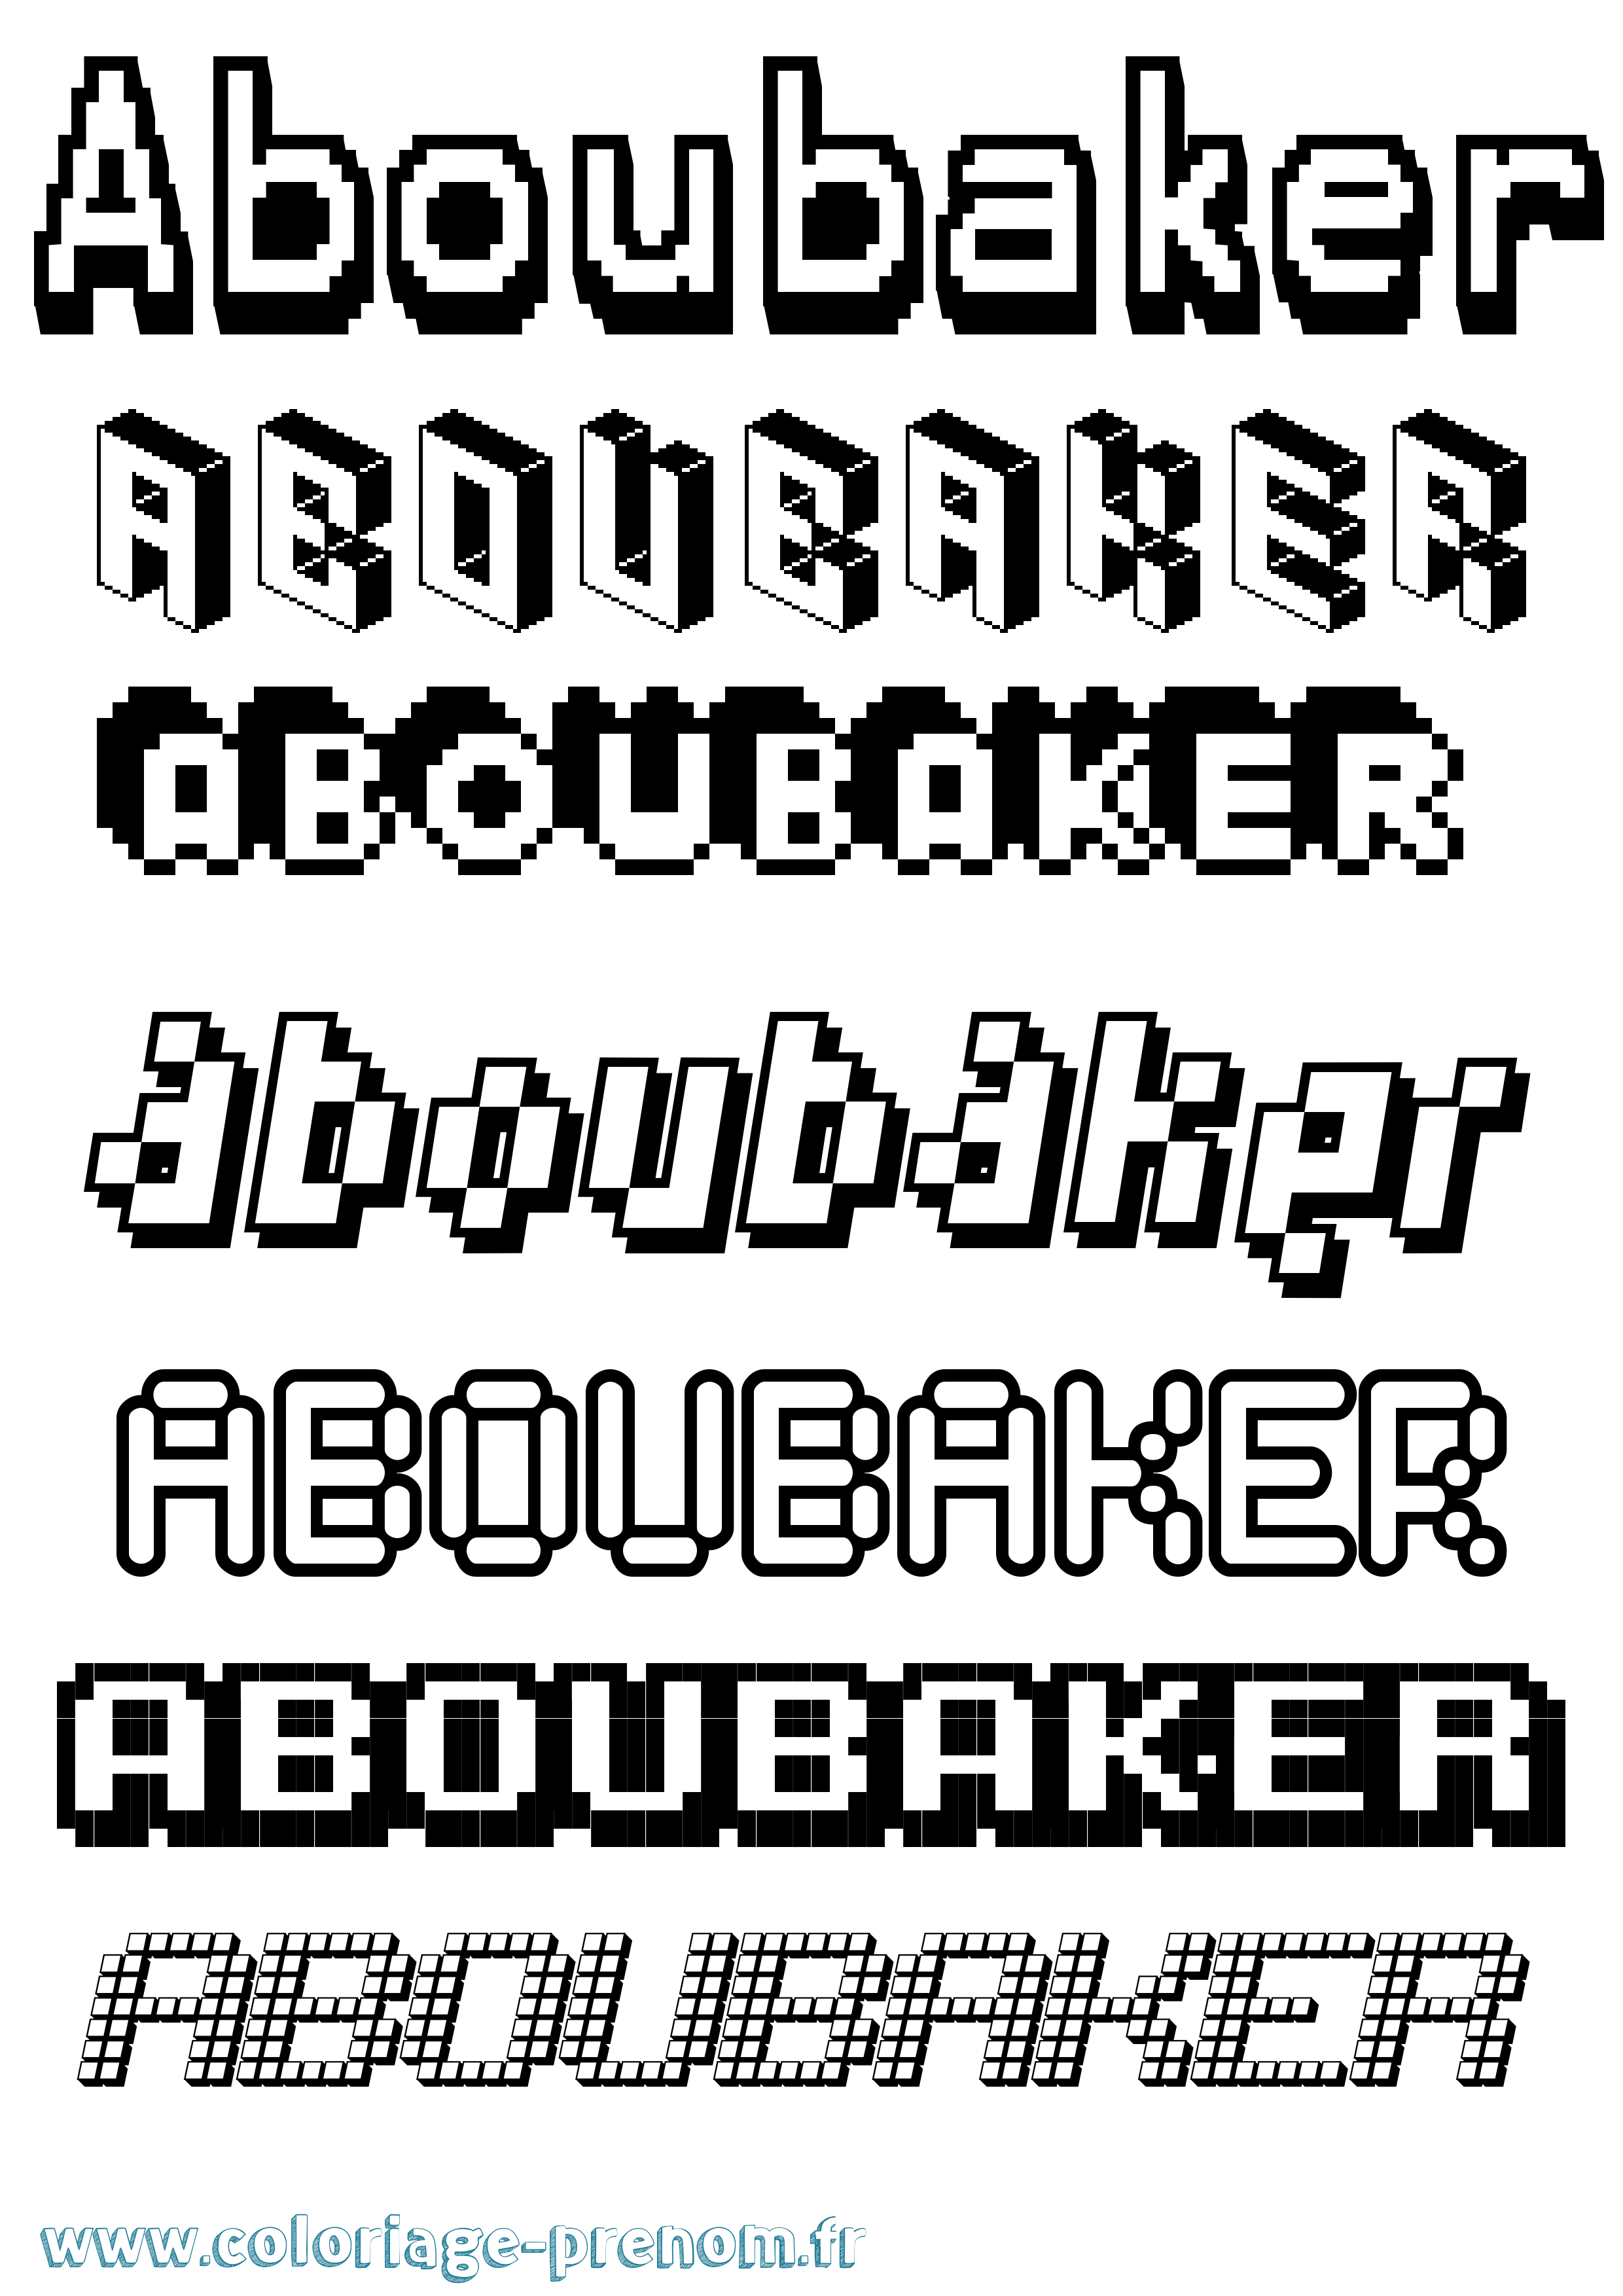 Coloriage prénom Aboubaker Pixel